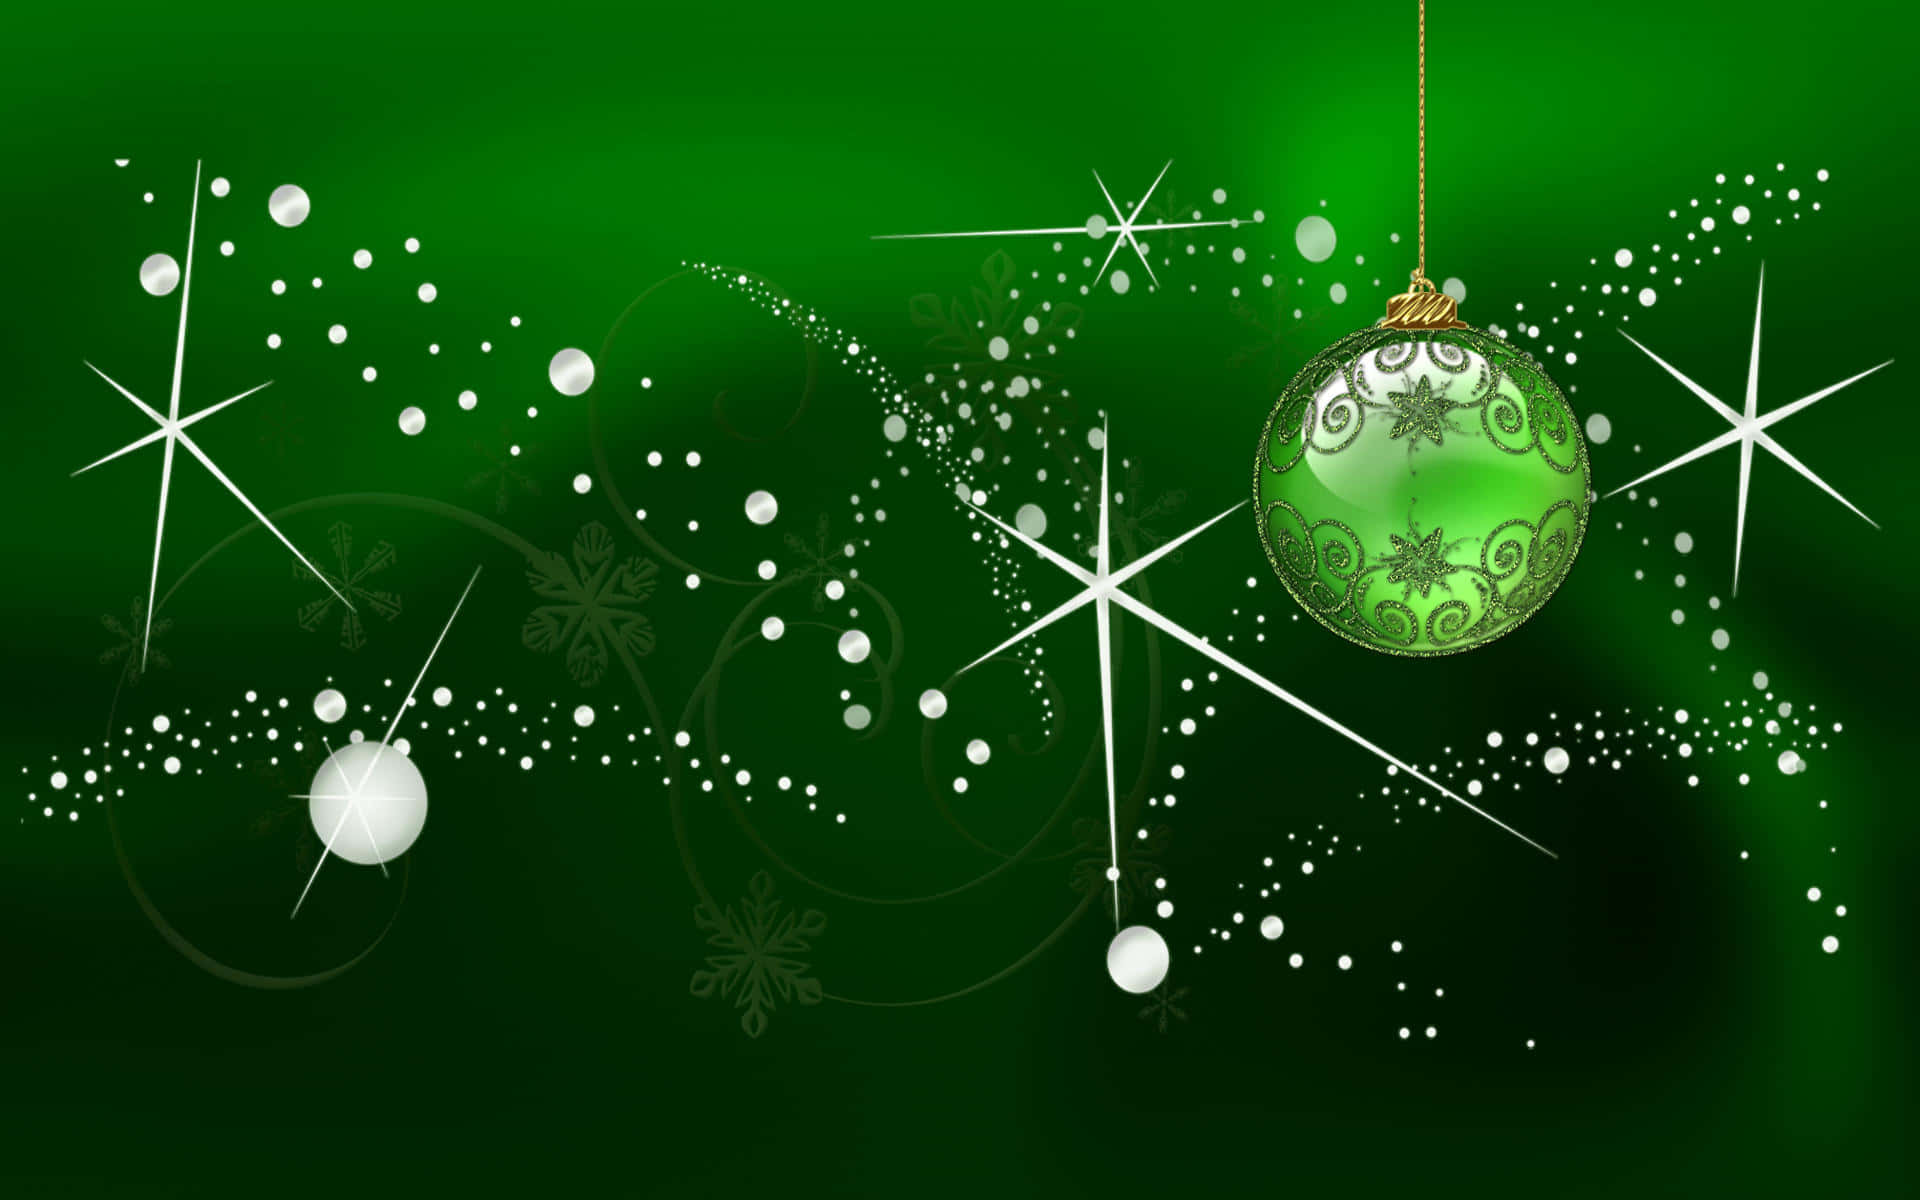 Feiereweihnachten Mit Einem Dunkelgrünen Touch Wallpaper